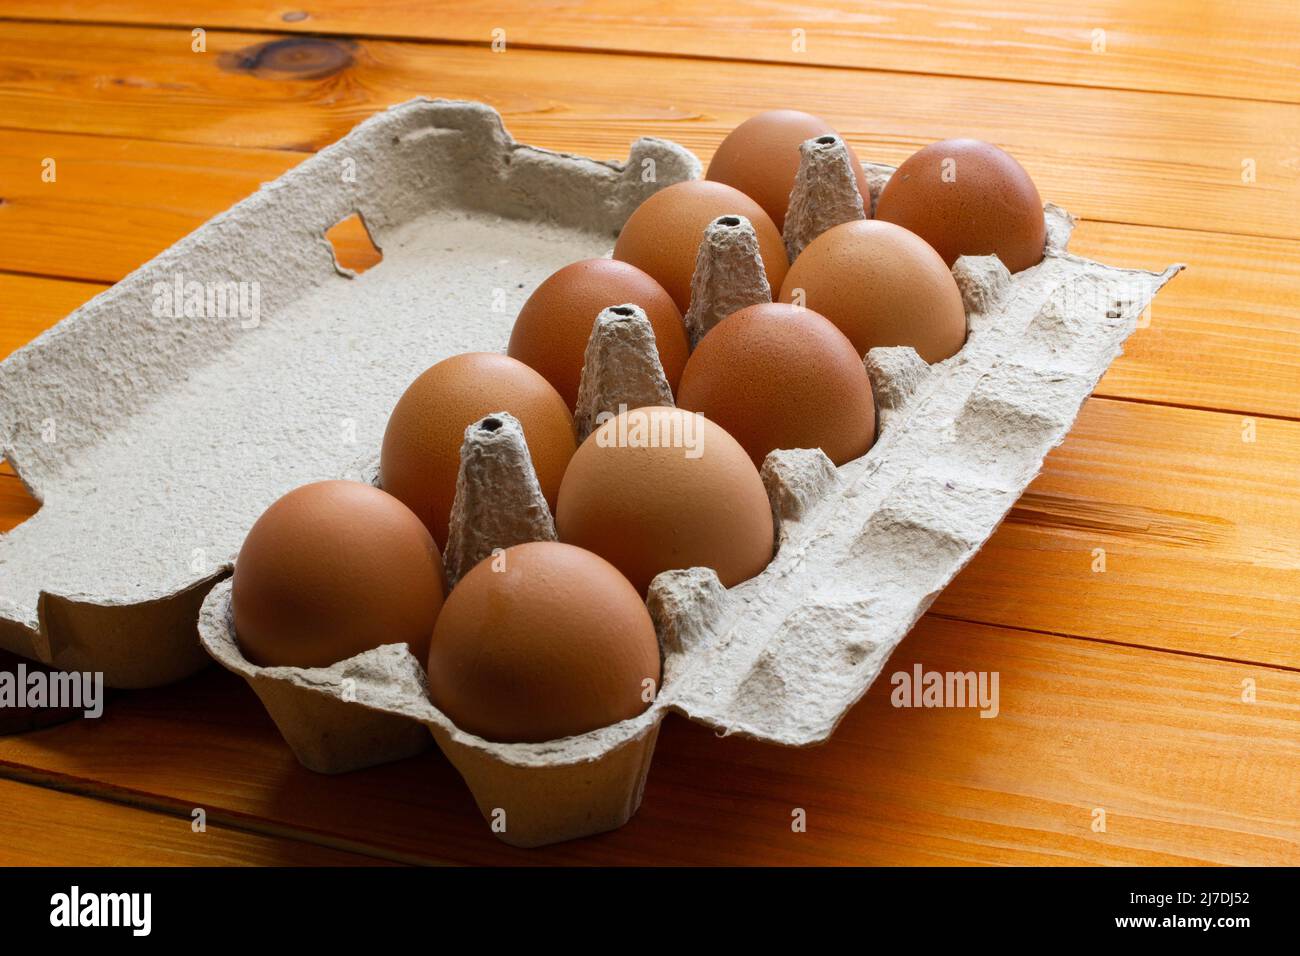 Uova di pollo in un pacchetto sul tavolo. Rosolare le uova di pollo in una scatola di carta riciclata su uno sfondo di legno. Prodotti naturali ecologici e sani. Molto Foto Stock